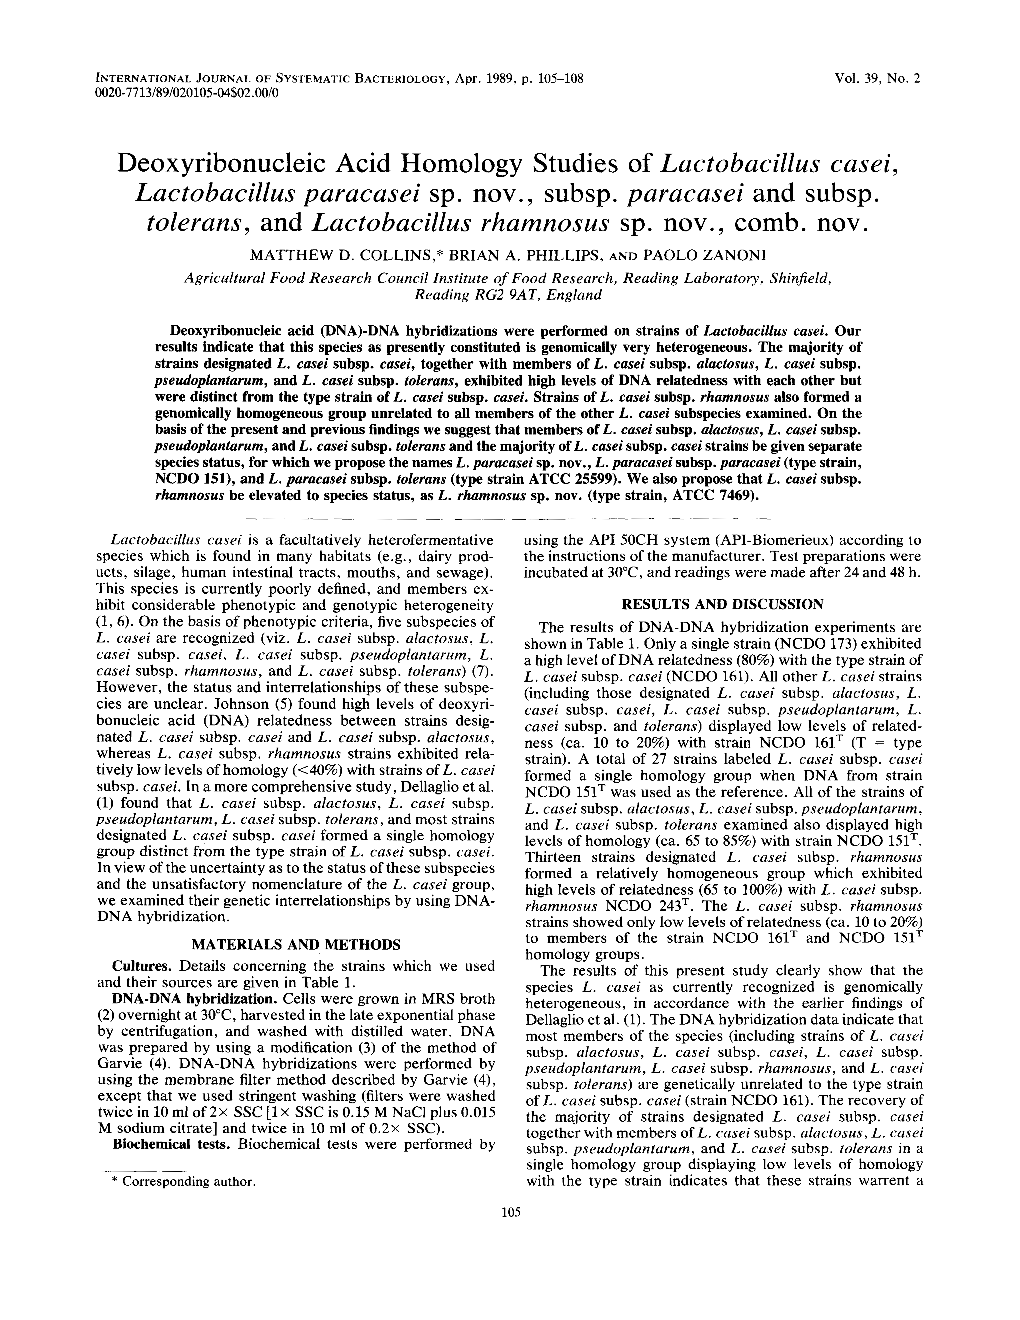 Deoxyribonucleic Acid Homology Studies of Lactobacillus Casei, Lactobacillus Paracasei Sp